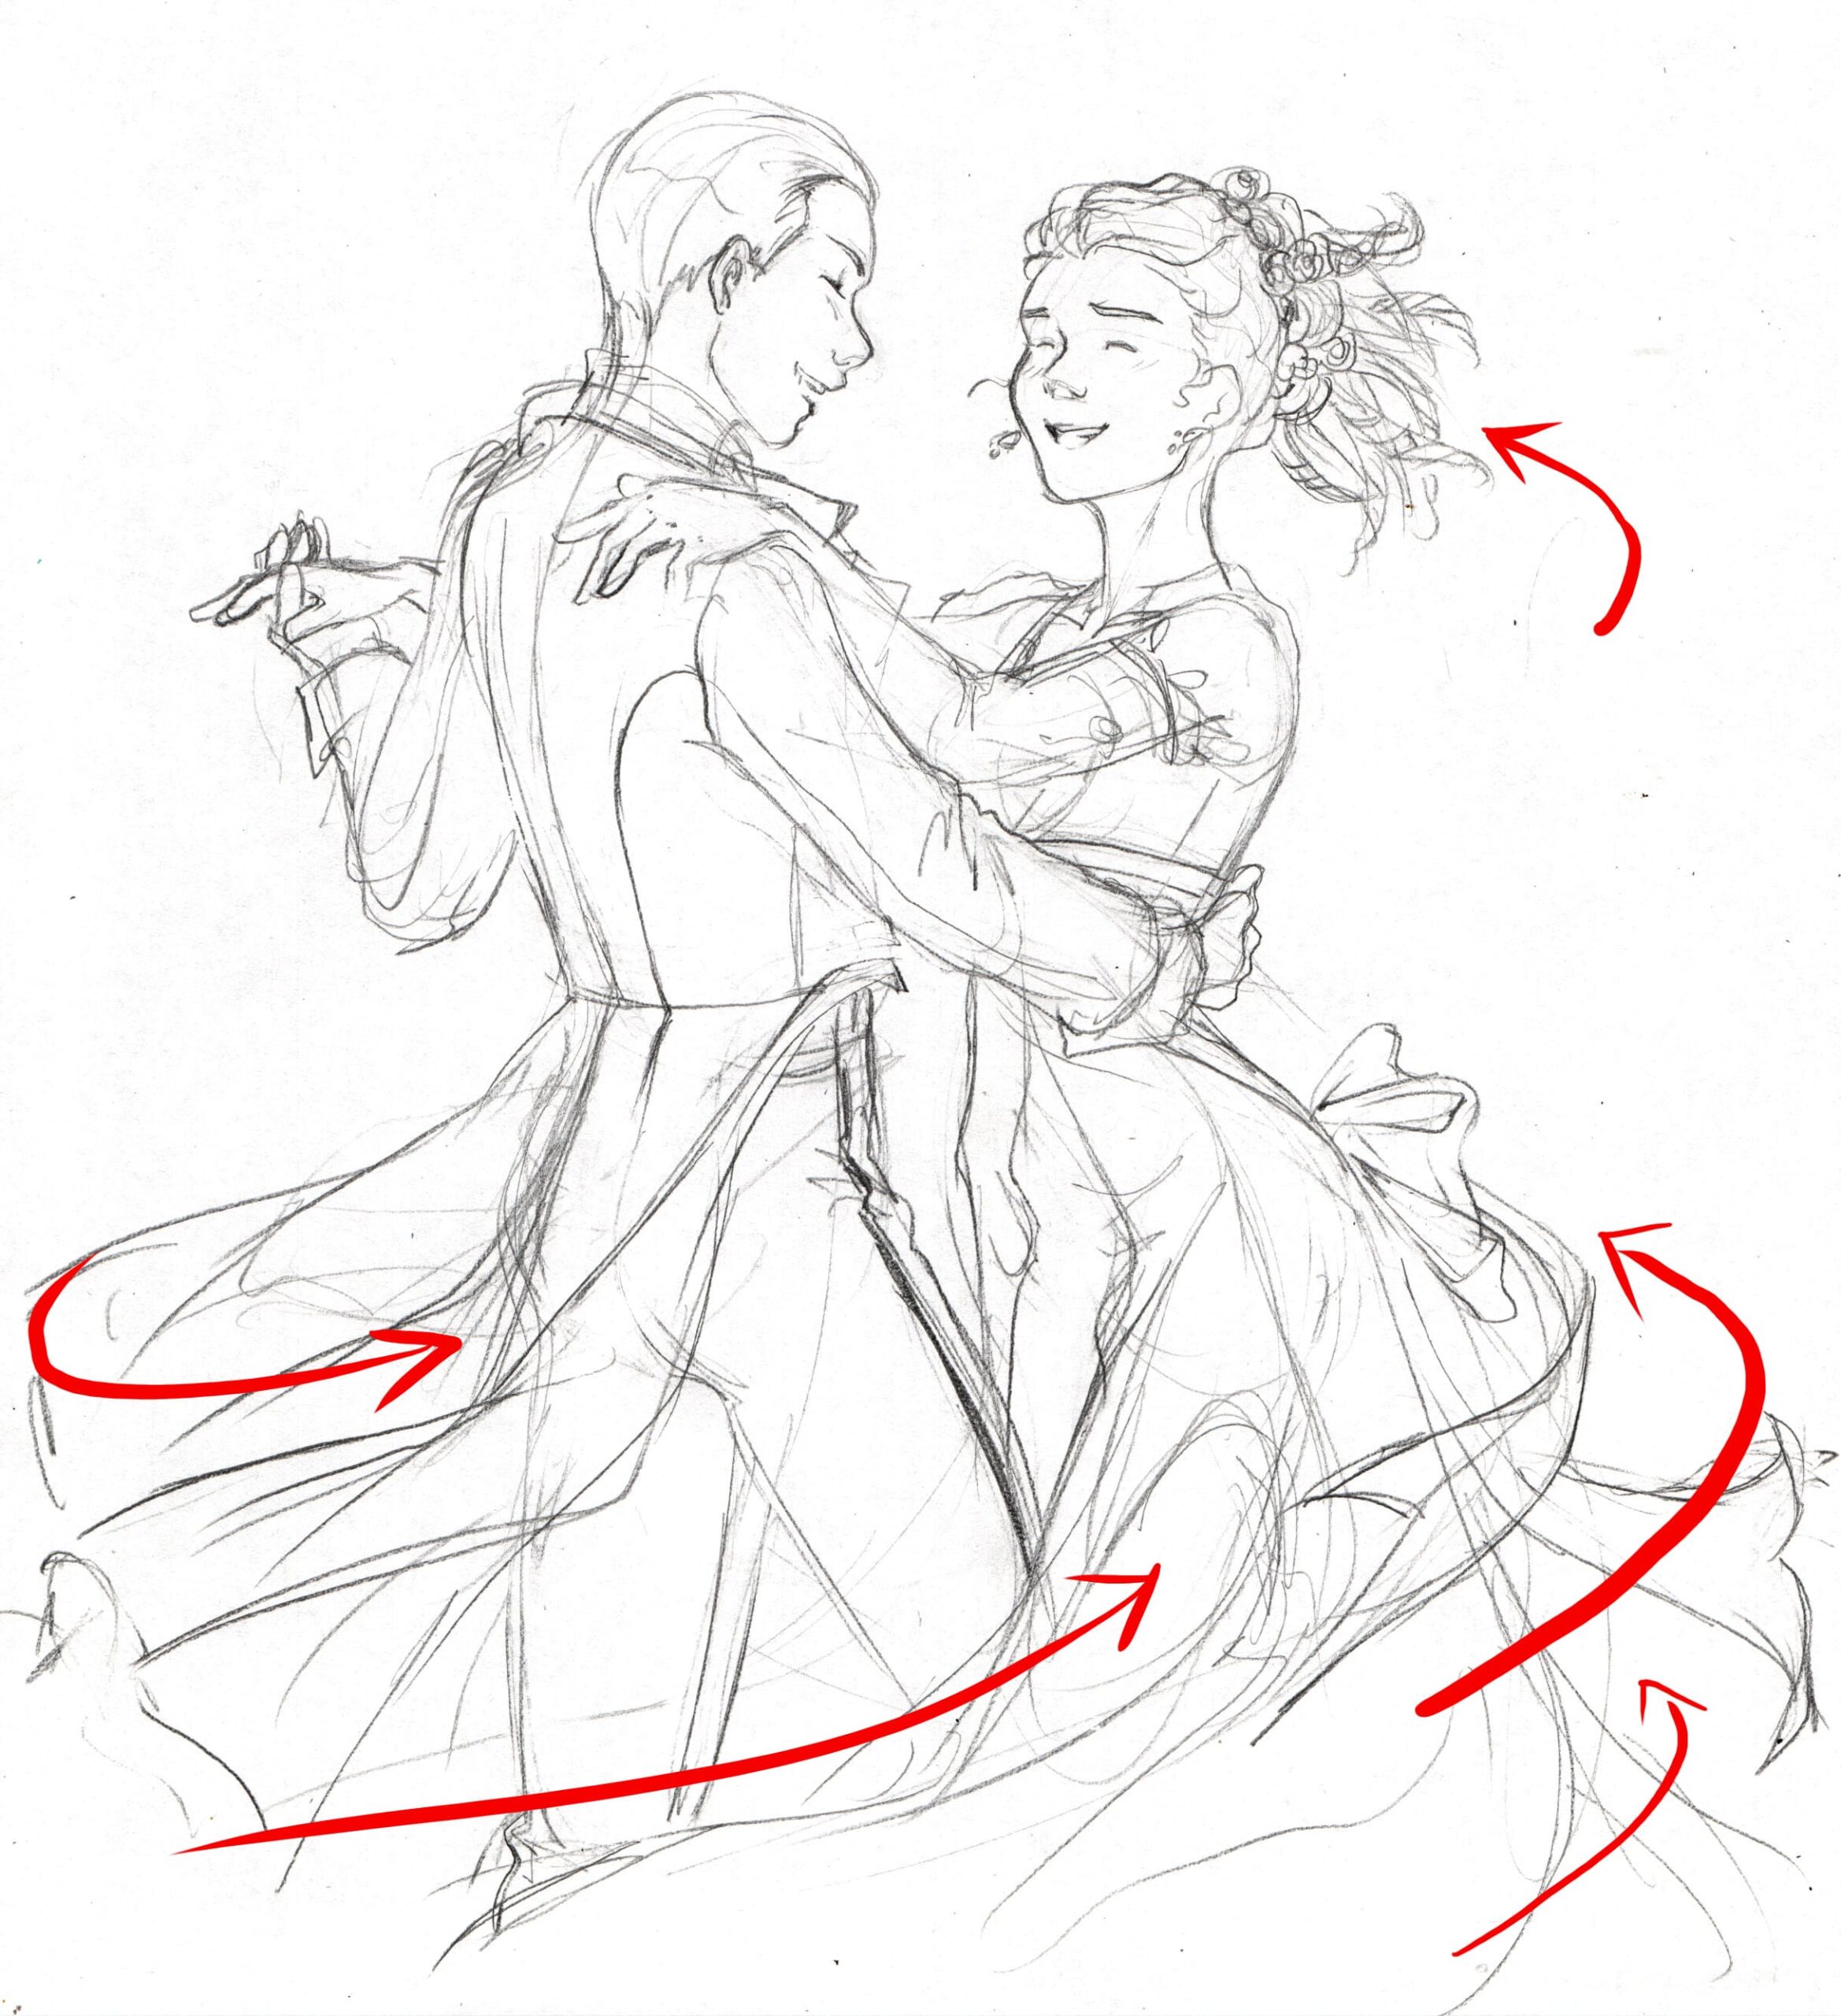 Croquis de deux personnage dansants, et lignes de mouvement pour montrer comment sont emportés à leur suite.